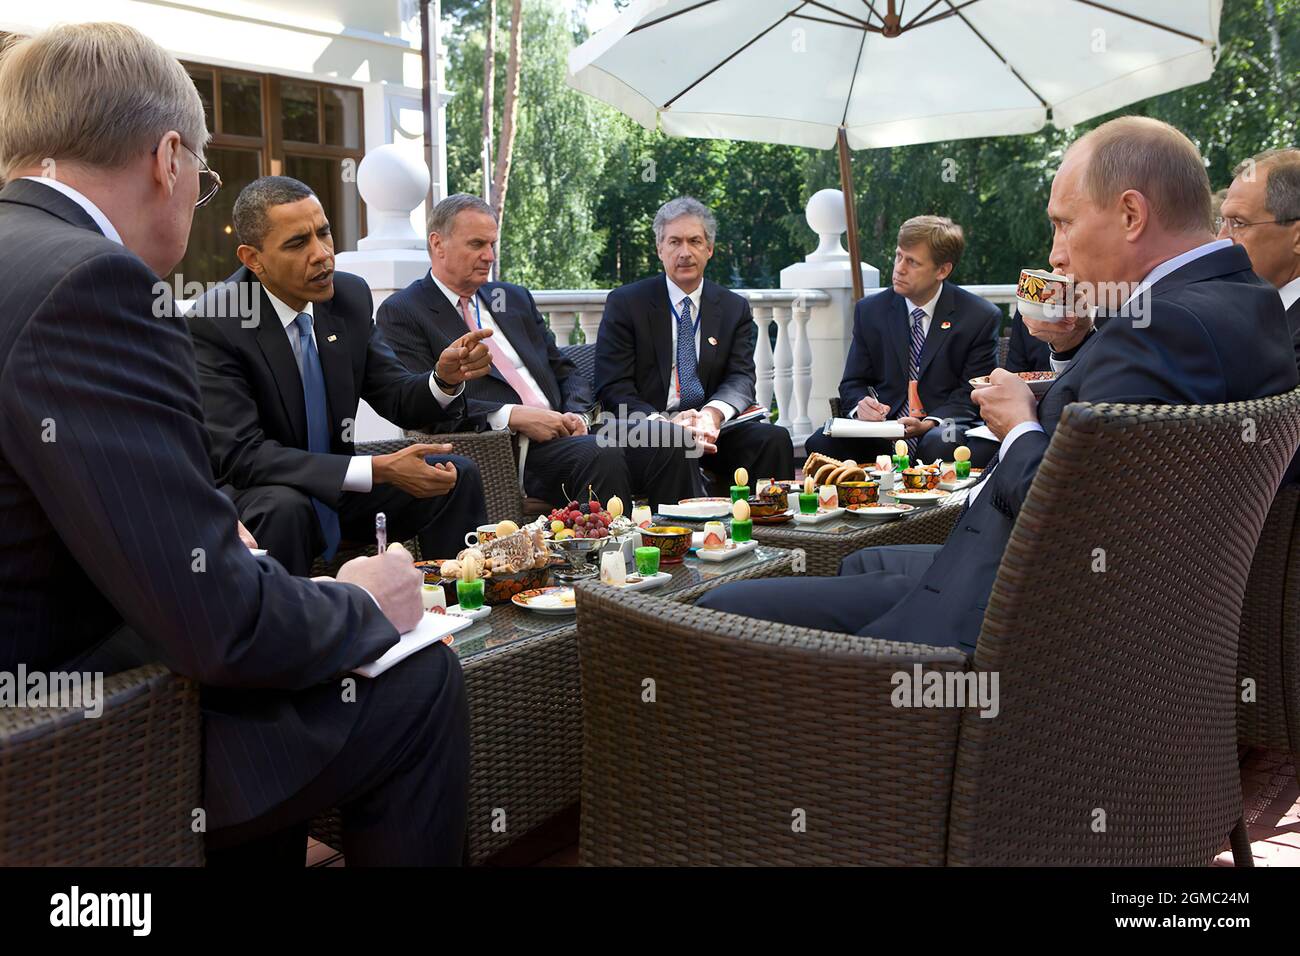 7 juillet 2009 « l’accès n’est généralement pas aussi bon pour moi dans d’autres pays parce que le pays d’accueil dicte ce que je peux et ne peux pas faire. J’ai donc été un peu surpris de pouvoir photographier ce petit déjeuner de rencontre entre le président Obama et le Premier ministre russe Vladmir Poutine à Moscou. » (Photo officielle de la Maison Blanche par Pete Souza) cette photo officielle de la Maison Blanche est disponible uniquement pour publication par les organismes de presse et/ou pour impression personnelle par le(s) sujet(s) de la photo. La photographie ne peut être manipulée d'aucune manière et ne peut pas être utilisée dans le commerce ou la poli Banque D'Images